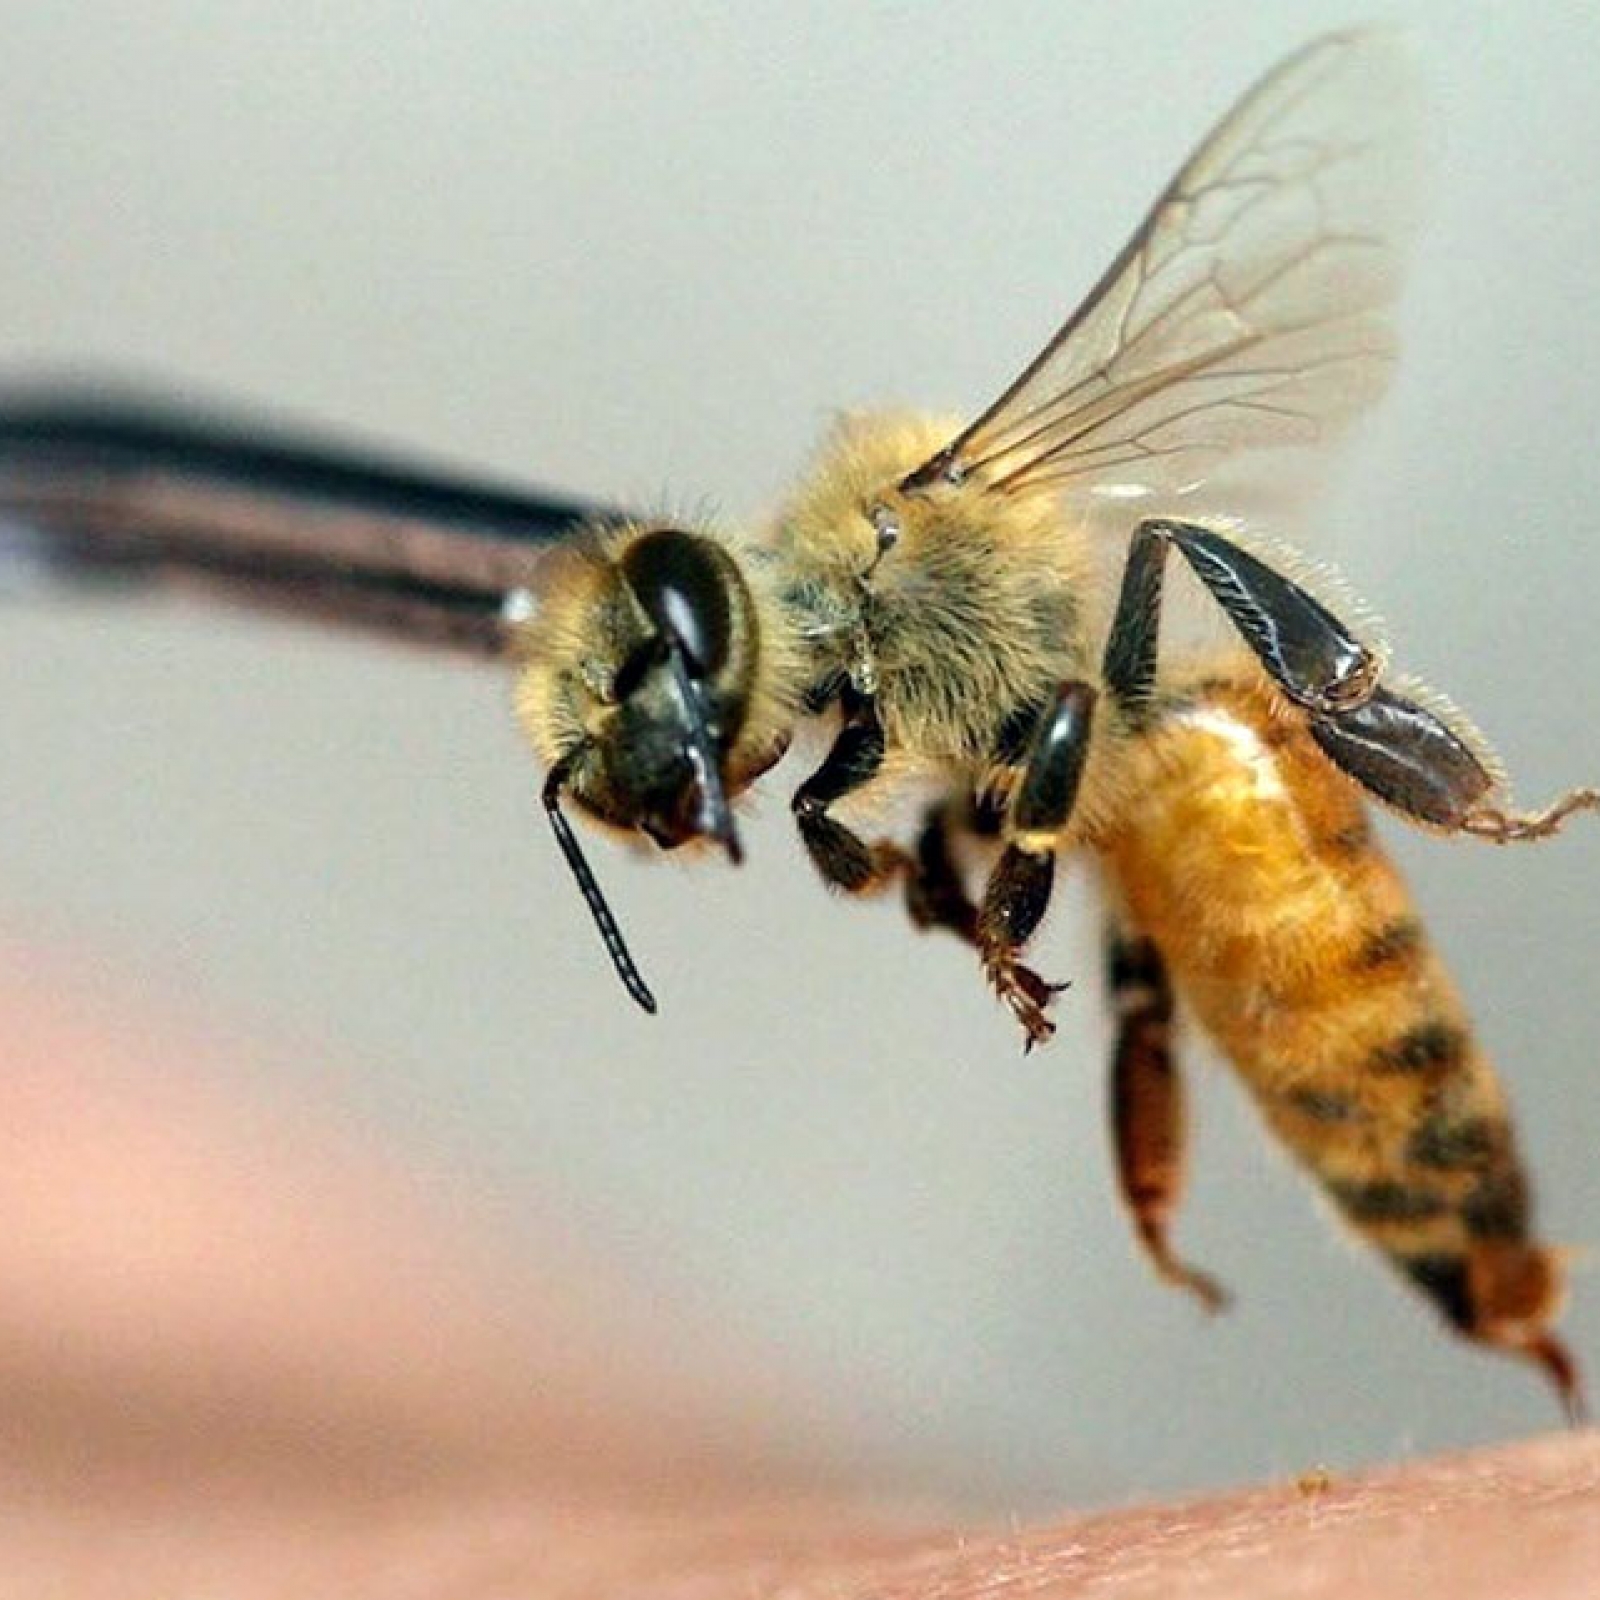 Лікування варикозу п'явками та бджолами Користь чи шкода?